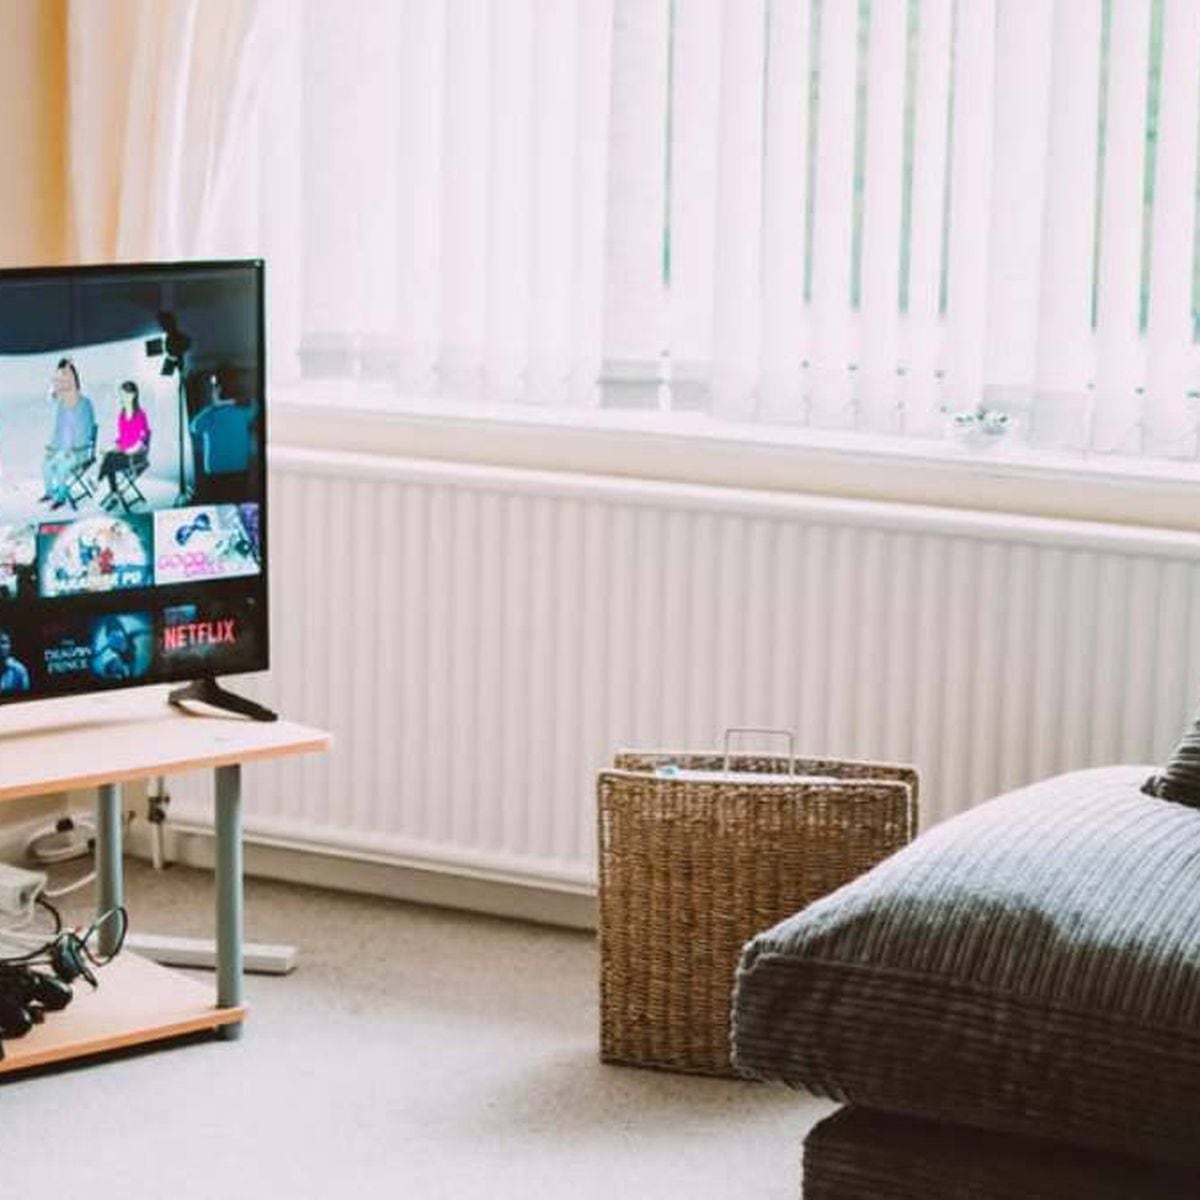 Cómo convertir TV convencional en Smart TV